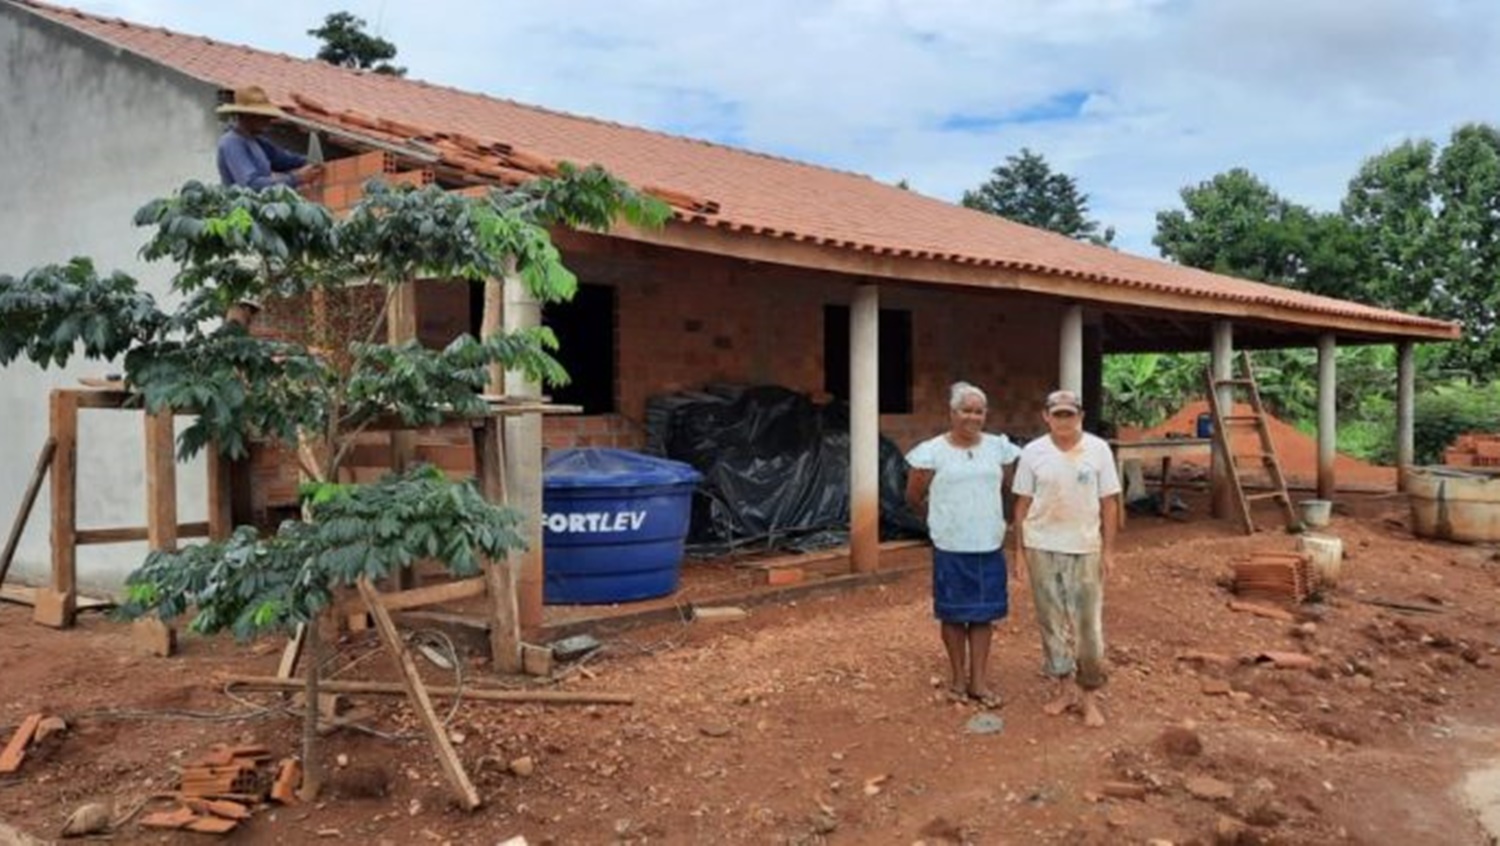 HABITAÇÃO: Linha de crédito beneficia agricultores familiares na construção de imóvel rural